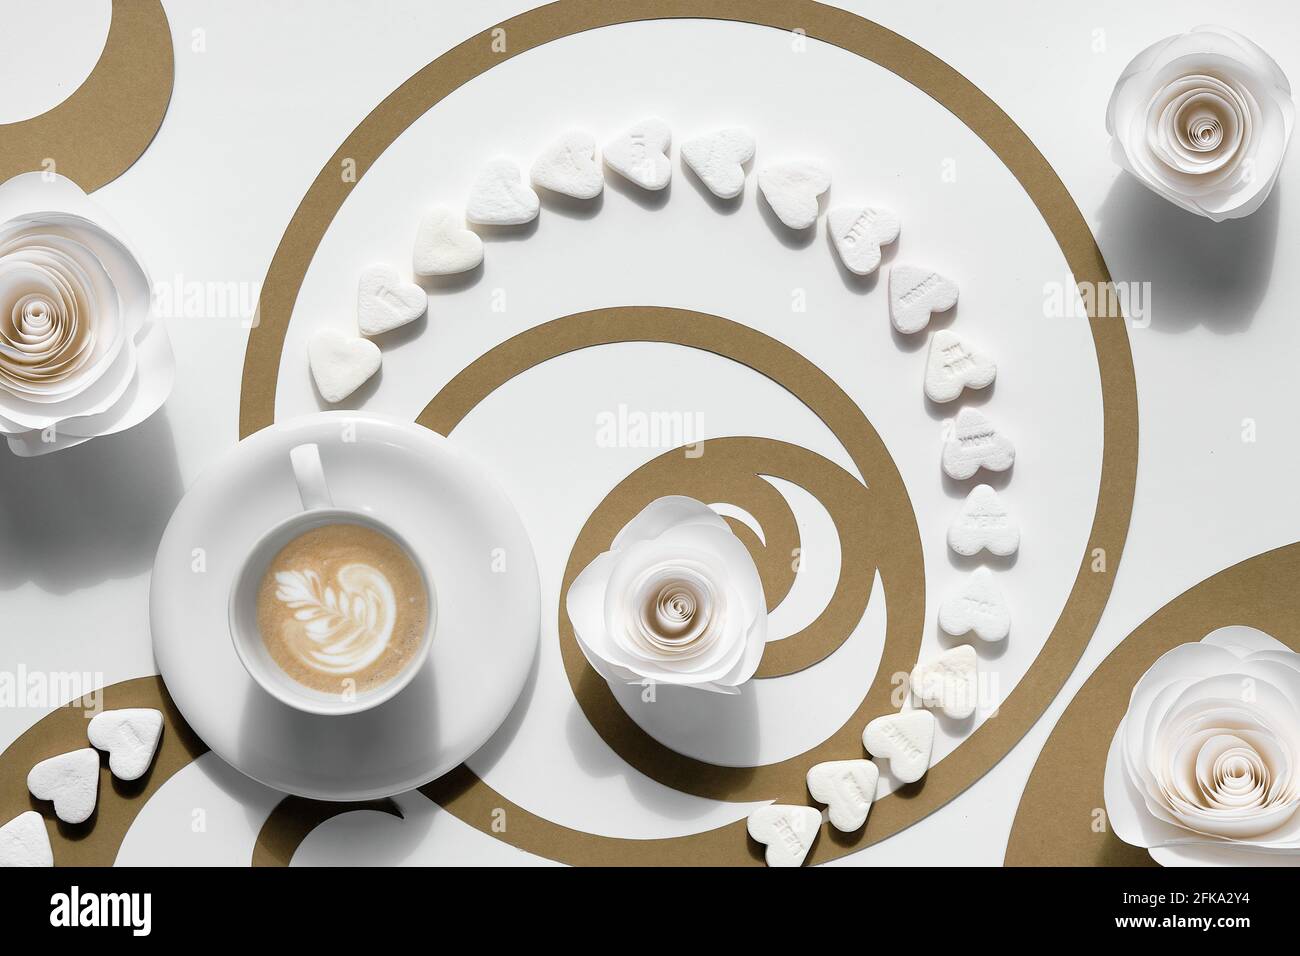 Kaffeetasse, Fibonacci Sequence Kreise aus braunem Papier und Zuckerherzen. Latte Art mit floralem Design, leckerer Perfektion. Golden Ratio-Konzept Stockfoto